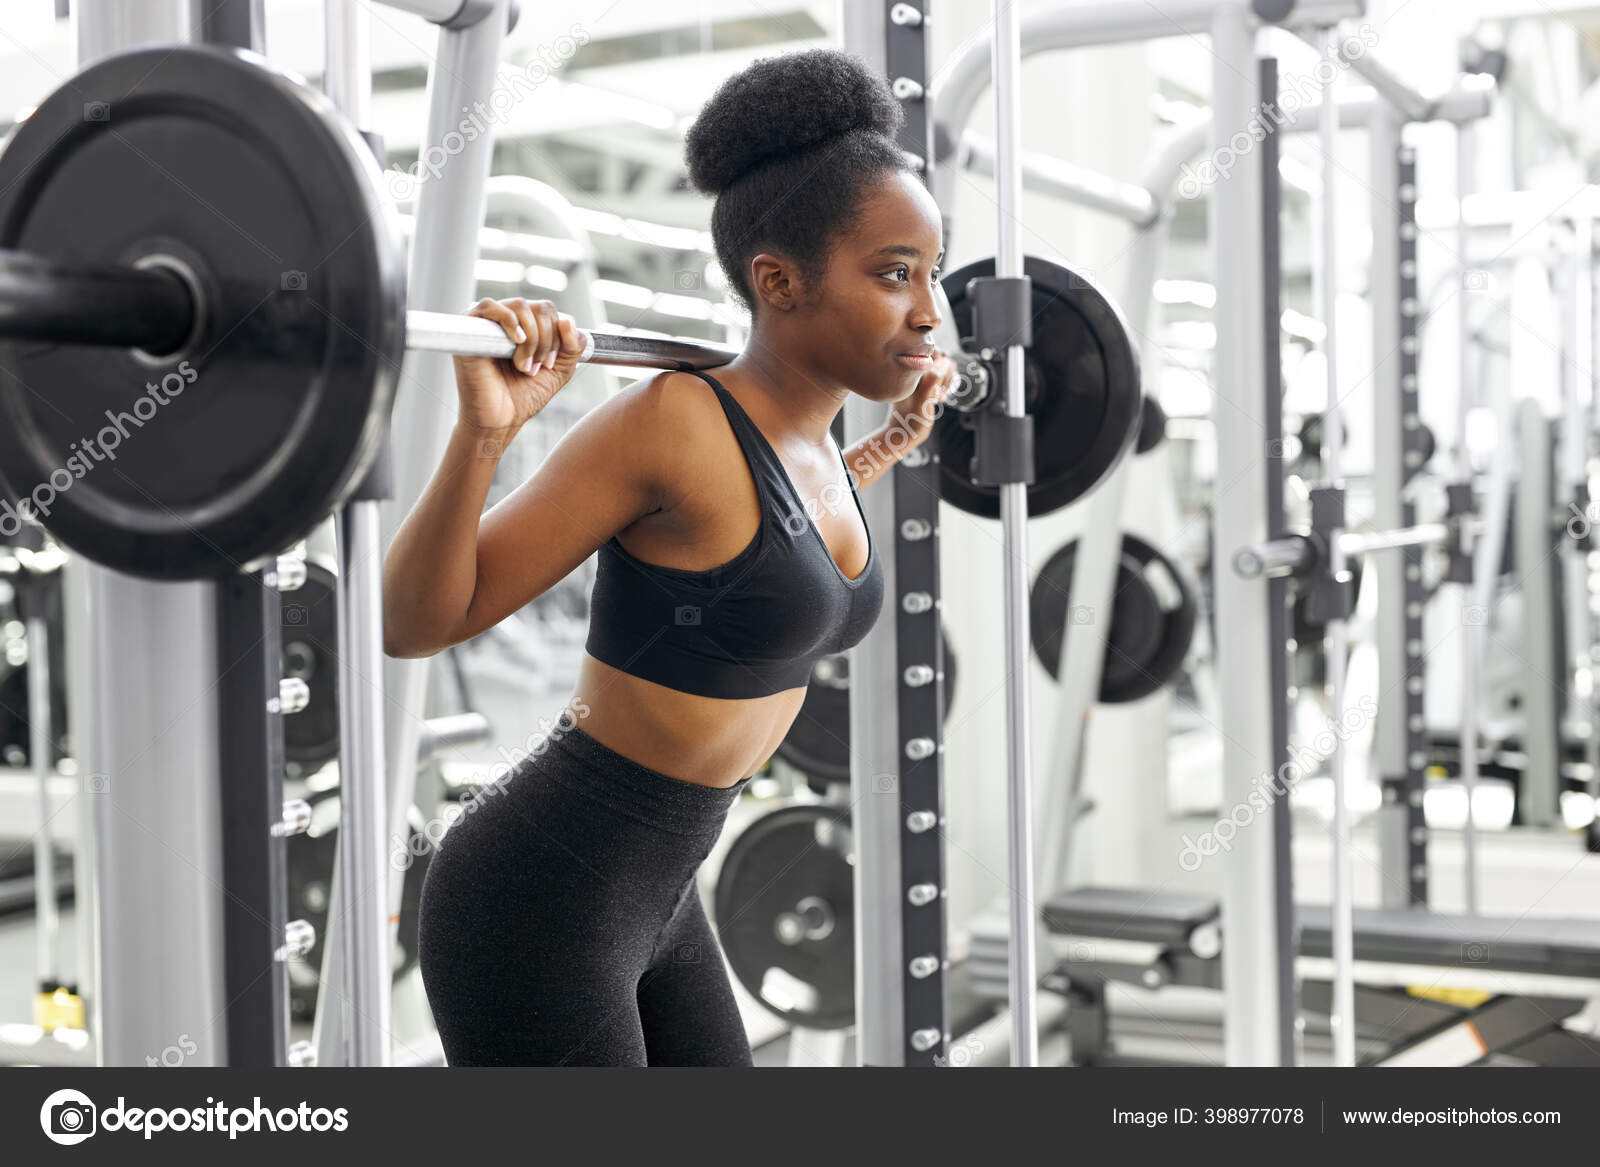 Construtora de corpo fitness e mulher com treino de treinamento